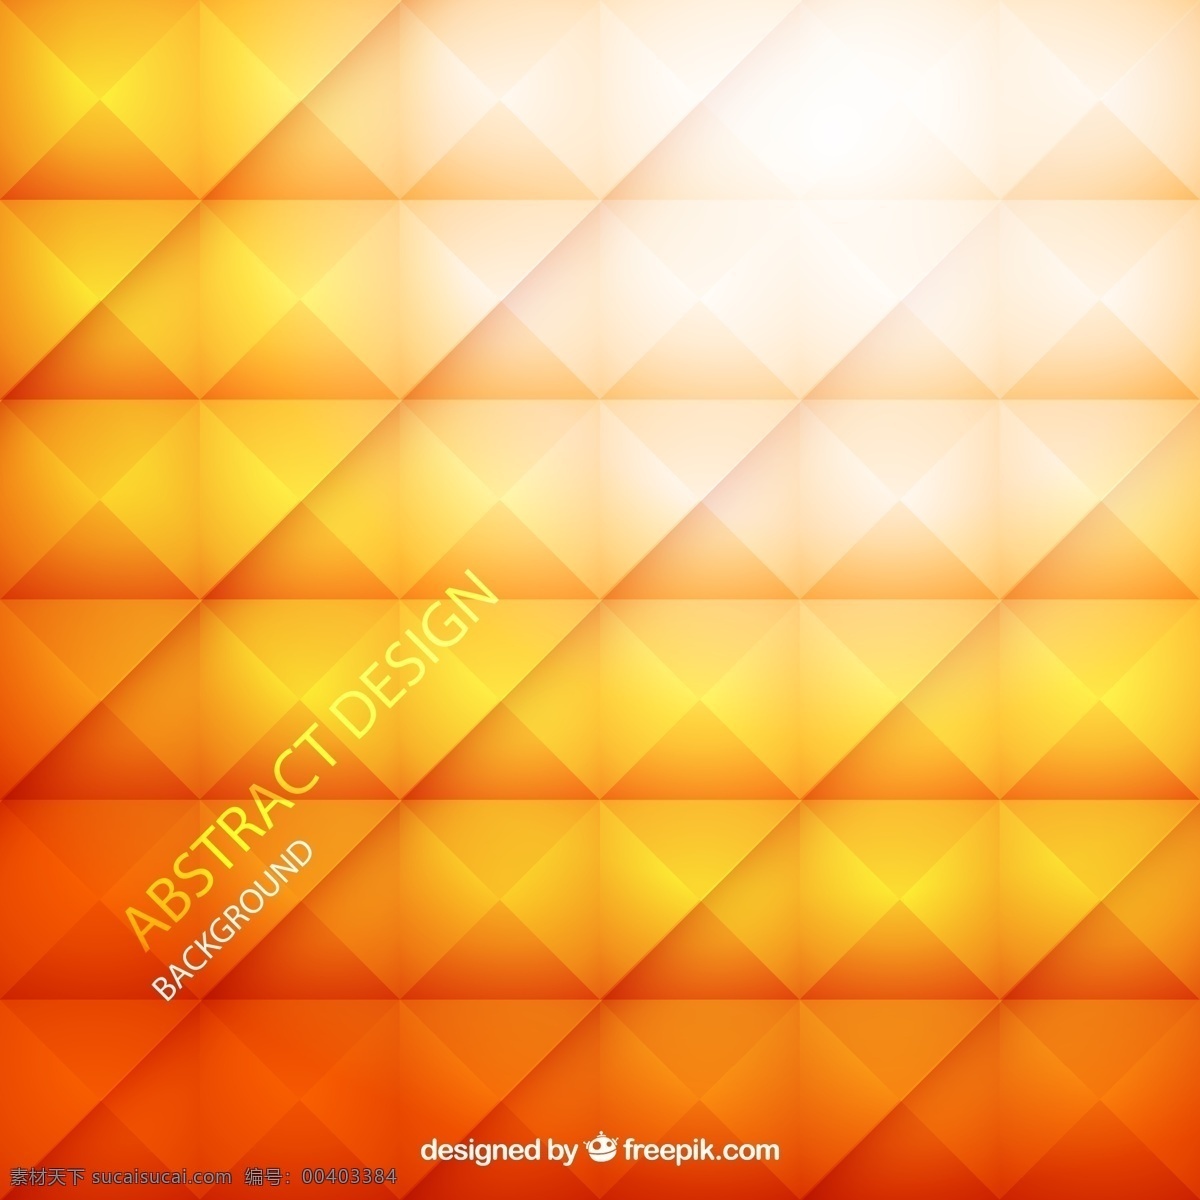 橙色 菱形 格 背景图片 菱形格 背景 矢量图 矢量 高清图片